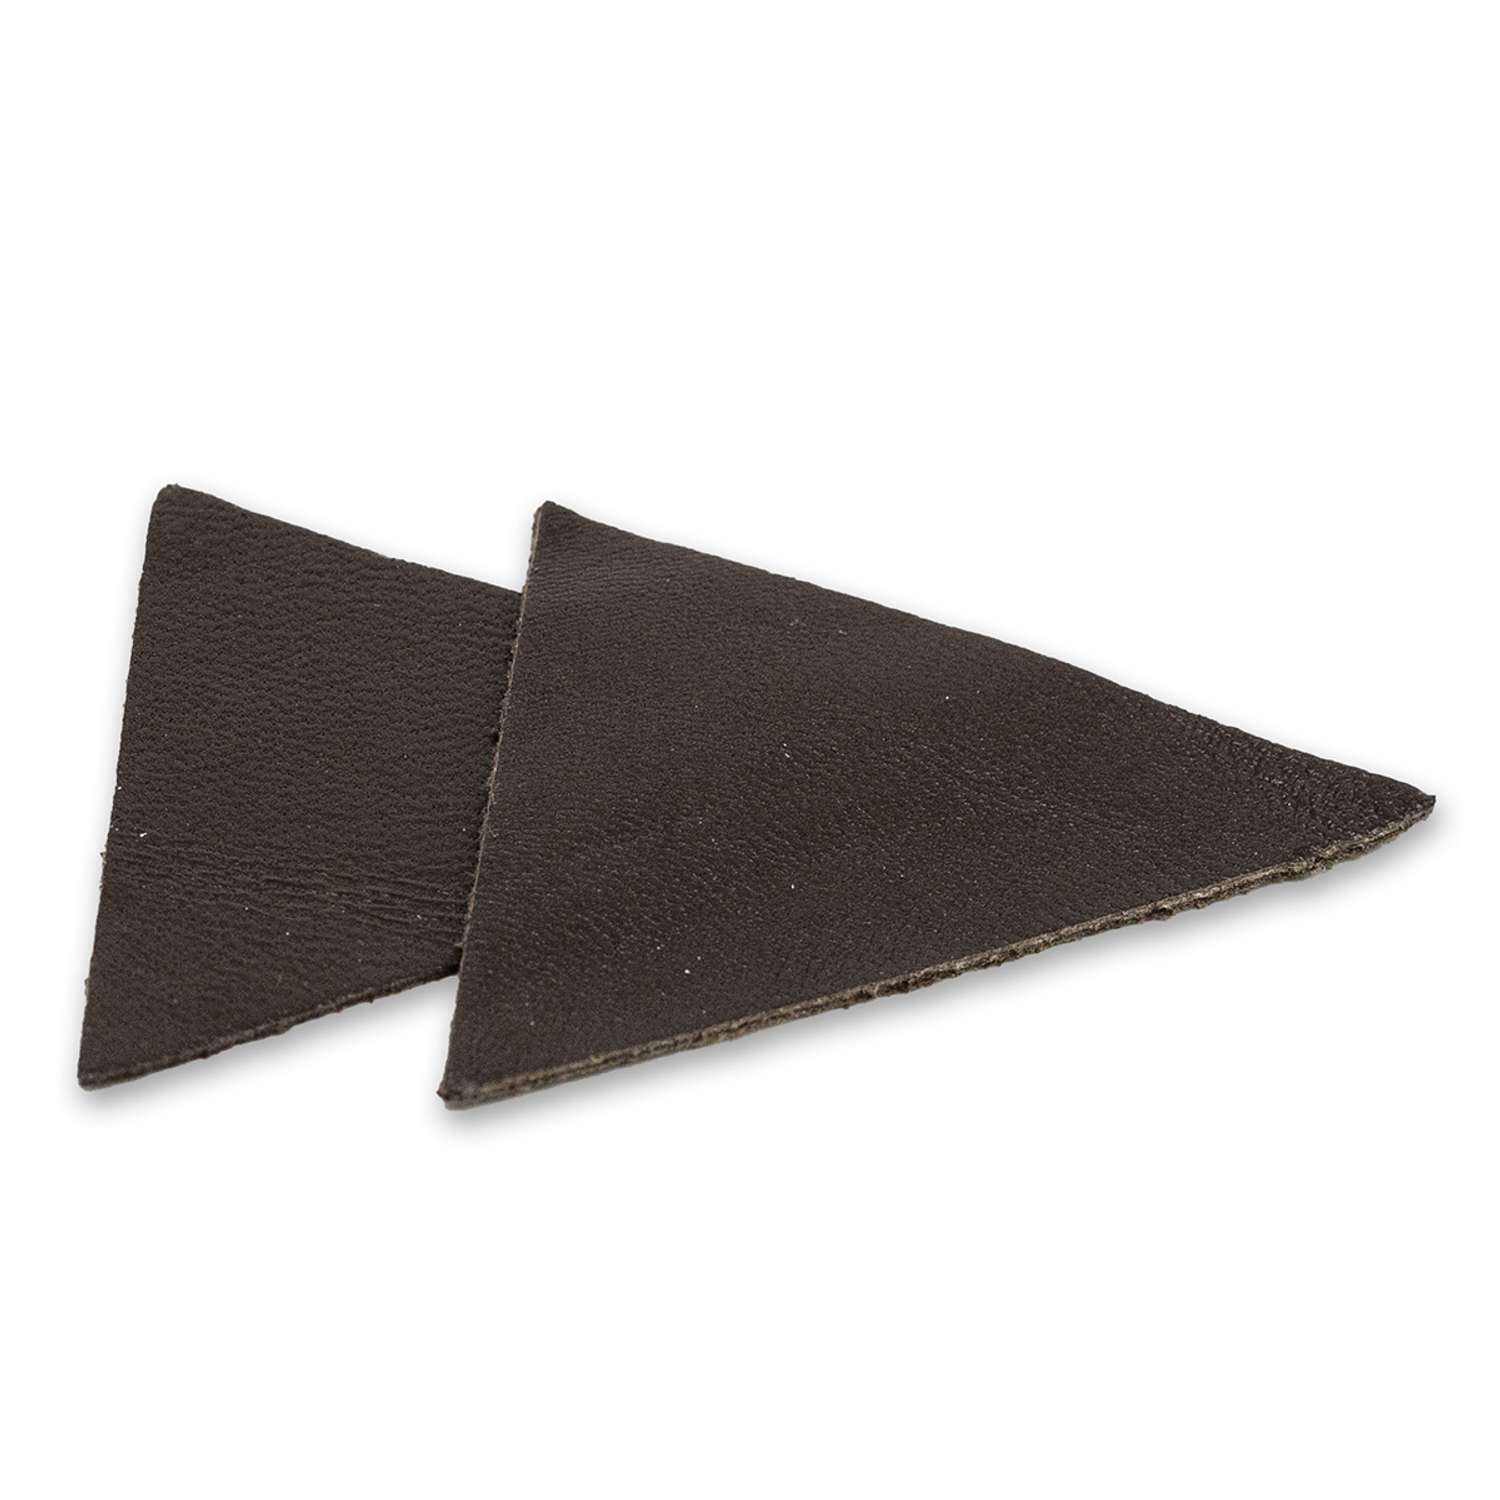 Термоаппликация Галерея нашивка заплатка Треугольник 5.9х4 см 2 шт из кожи для ремонта одежды темно-коричневый - фото 2